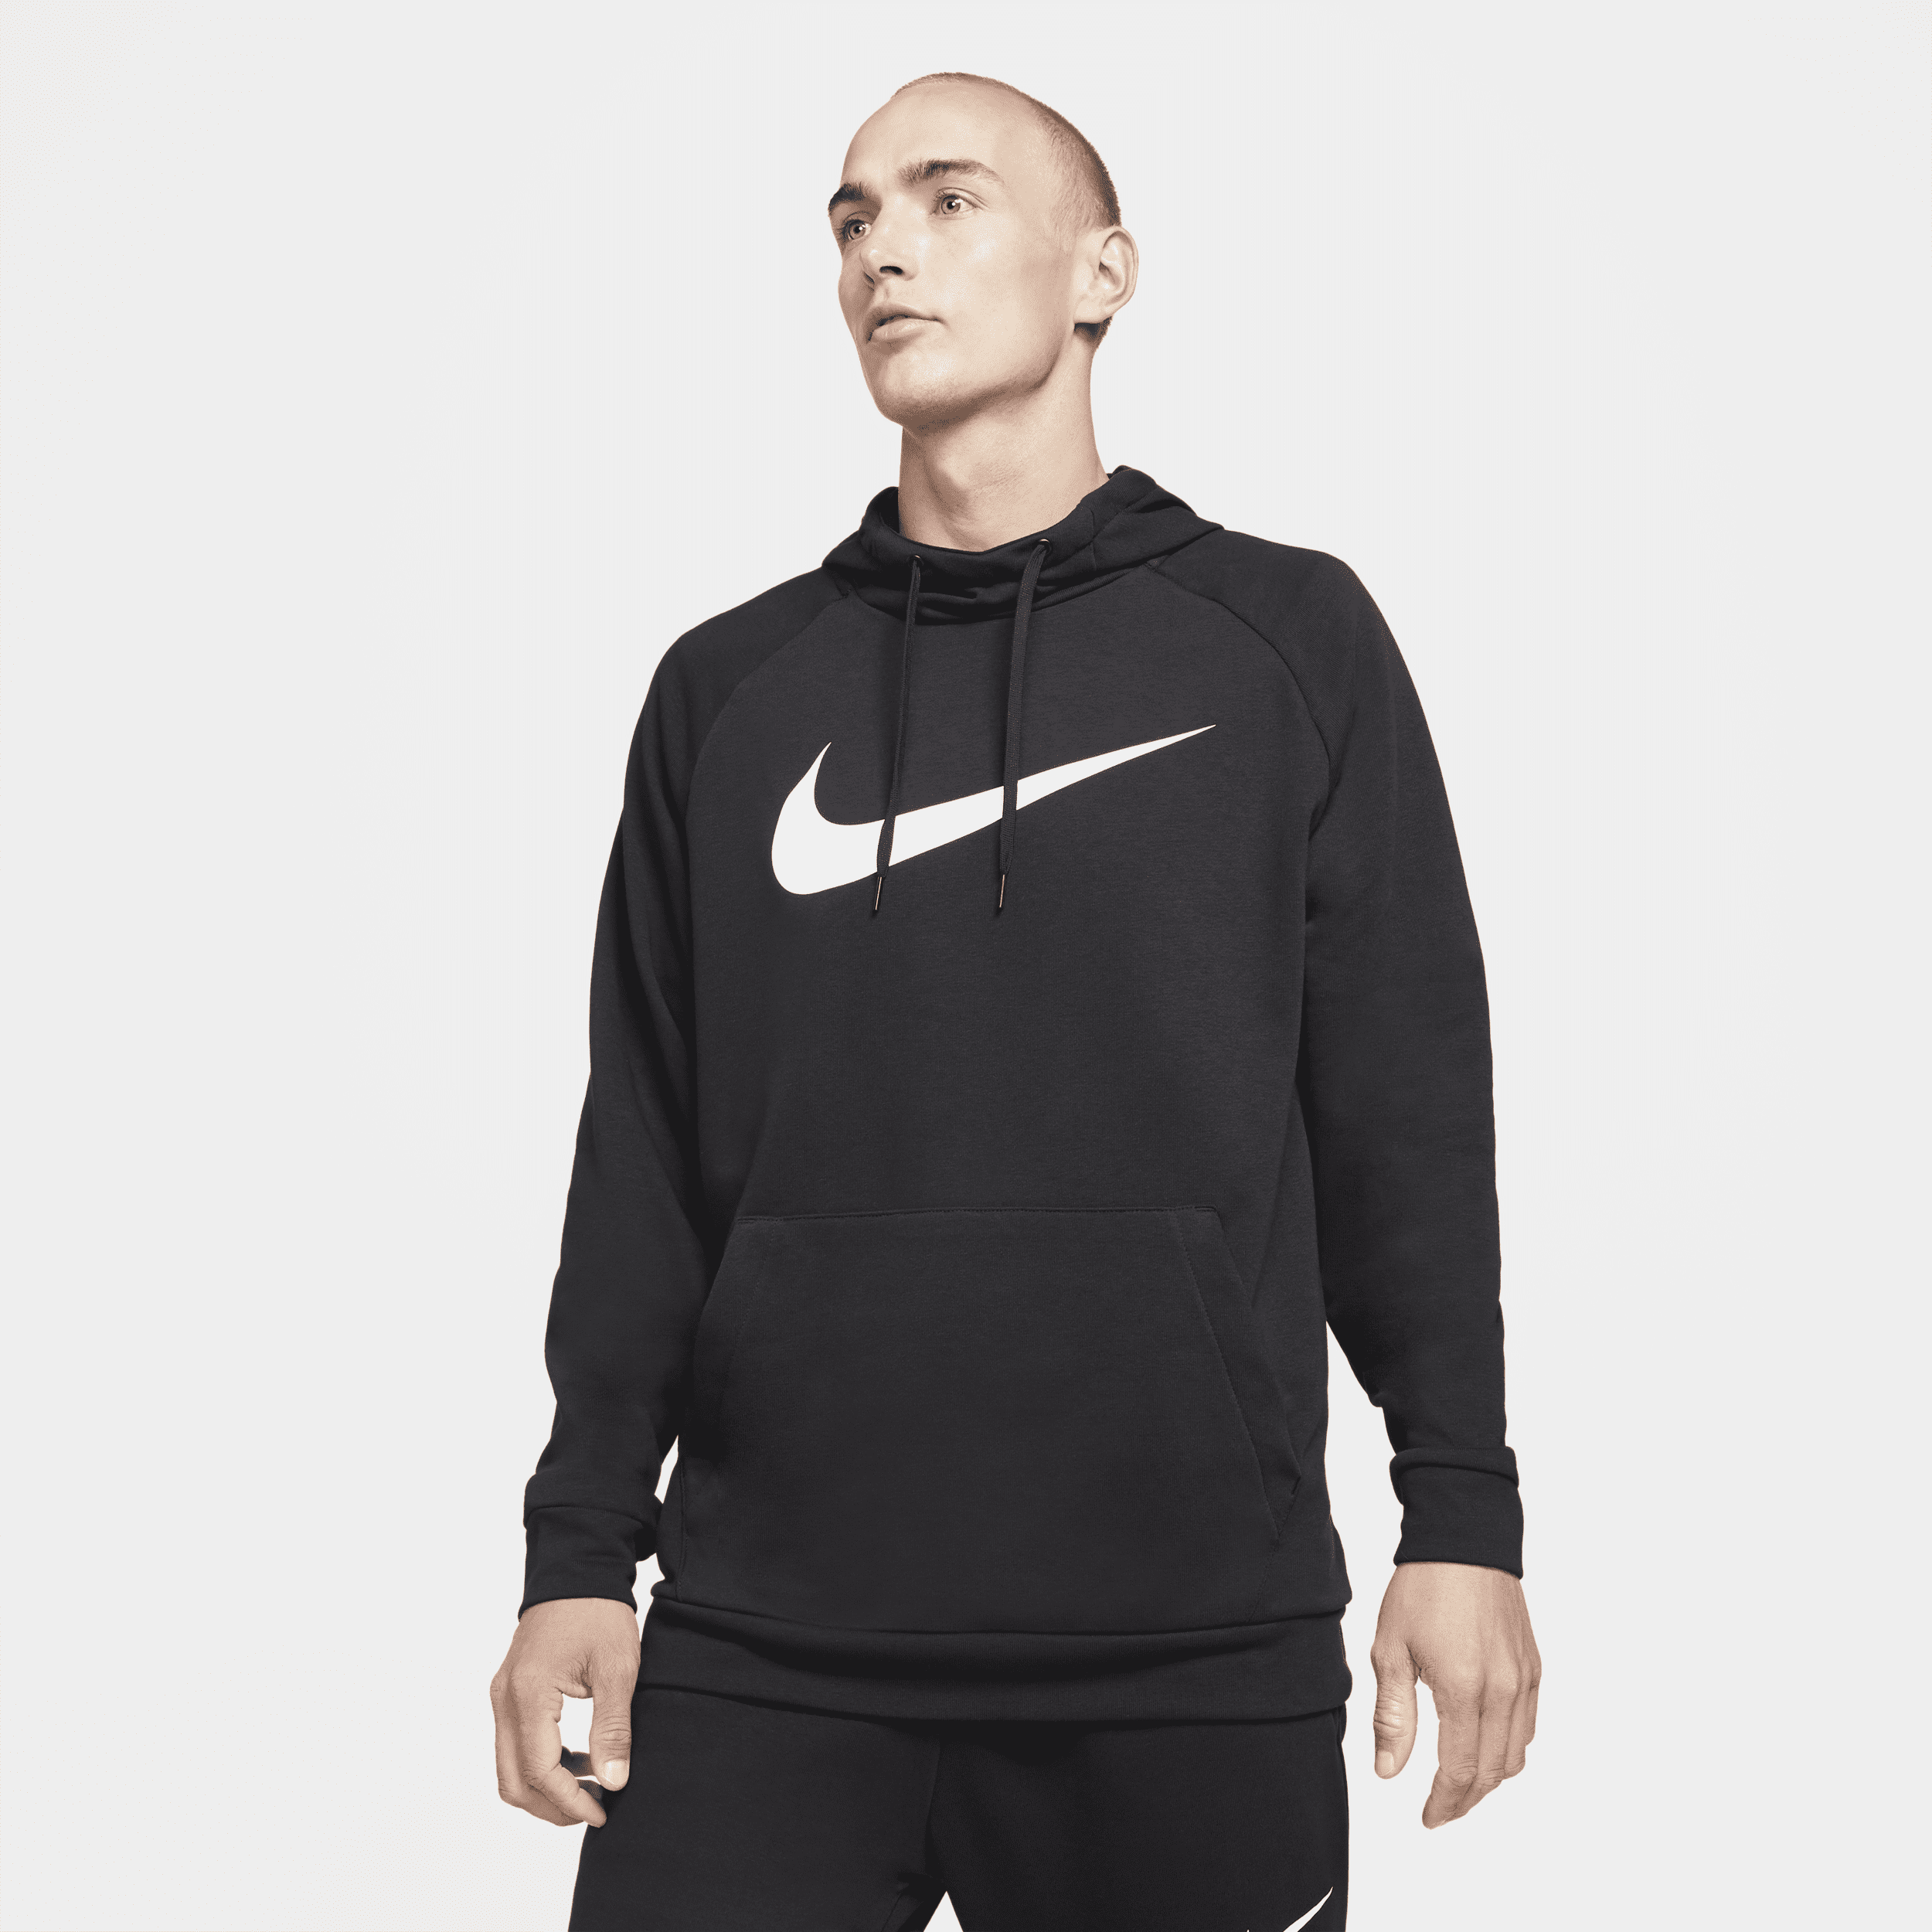 Nike Dry Graphic Dri-FIT fitnesstrui met capuchon voor heren - Zwart